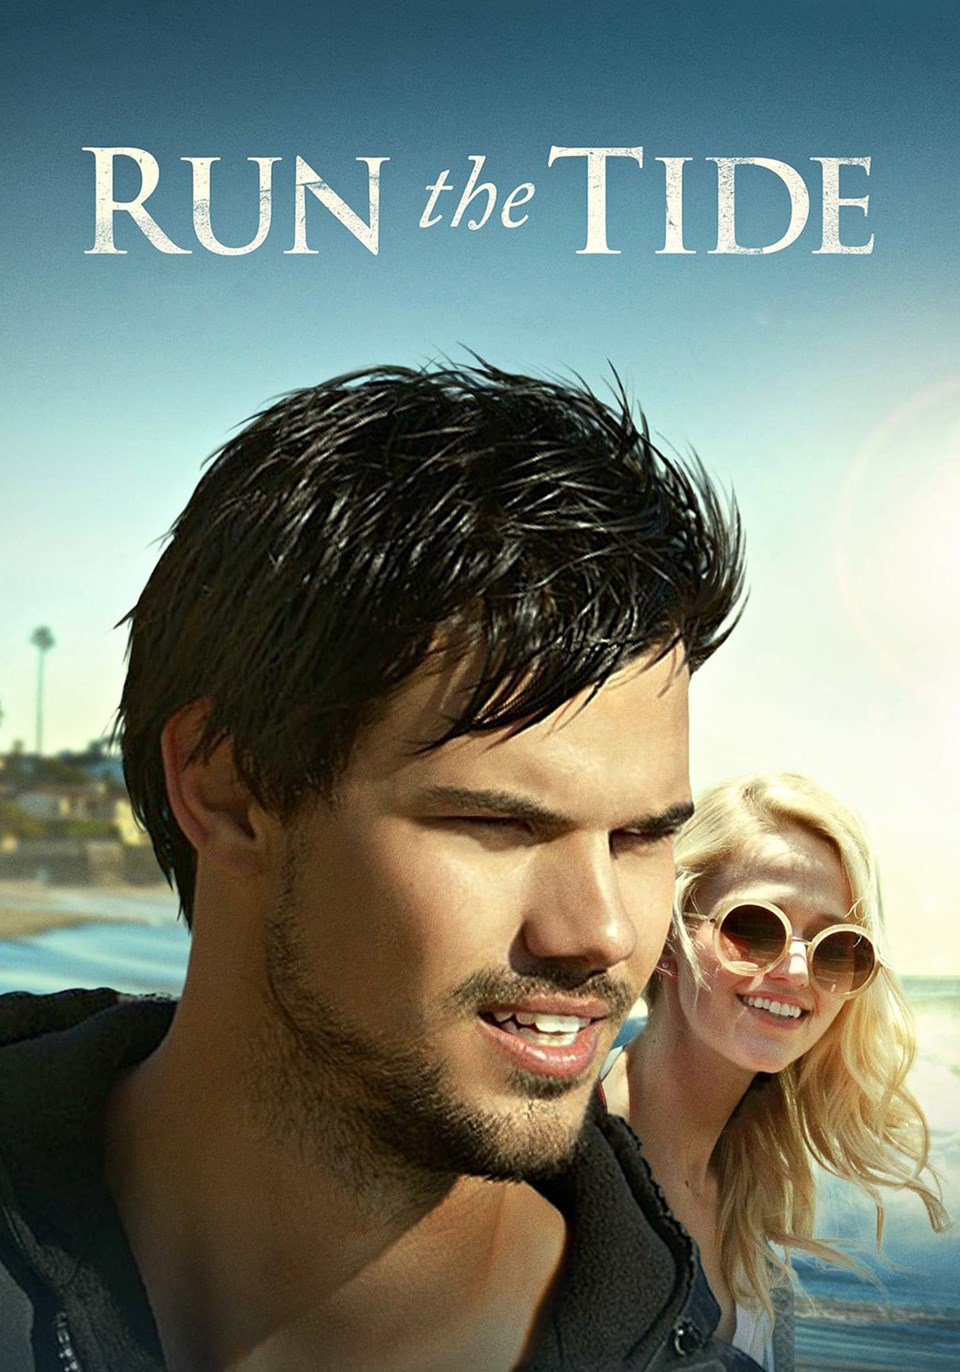 puhutv'den günün filmi: Kardeşlik (Run The Tide) - 1